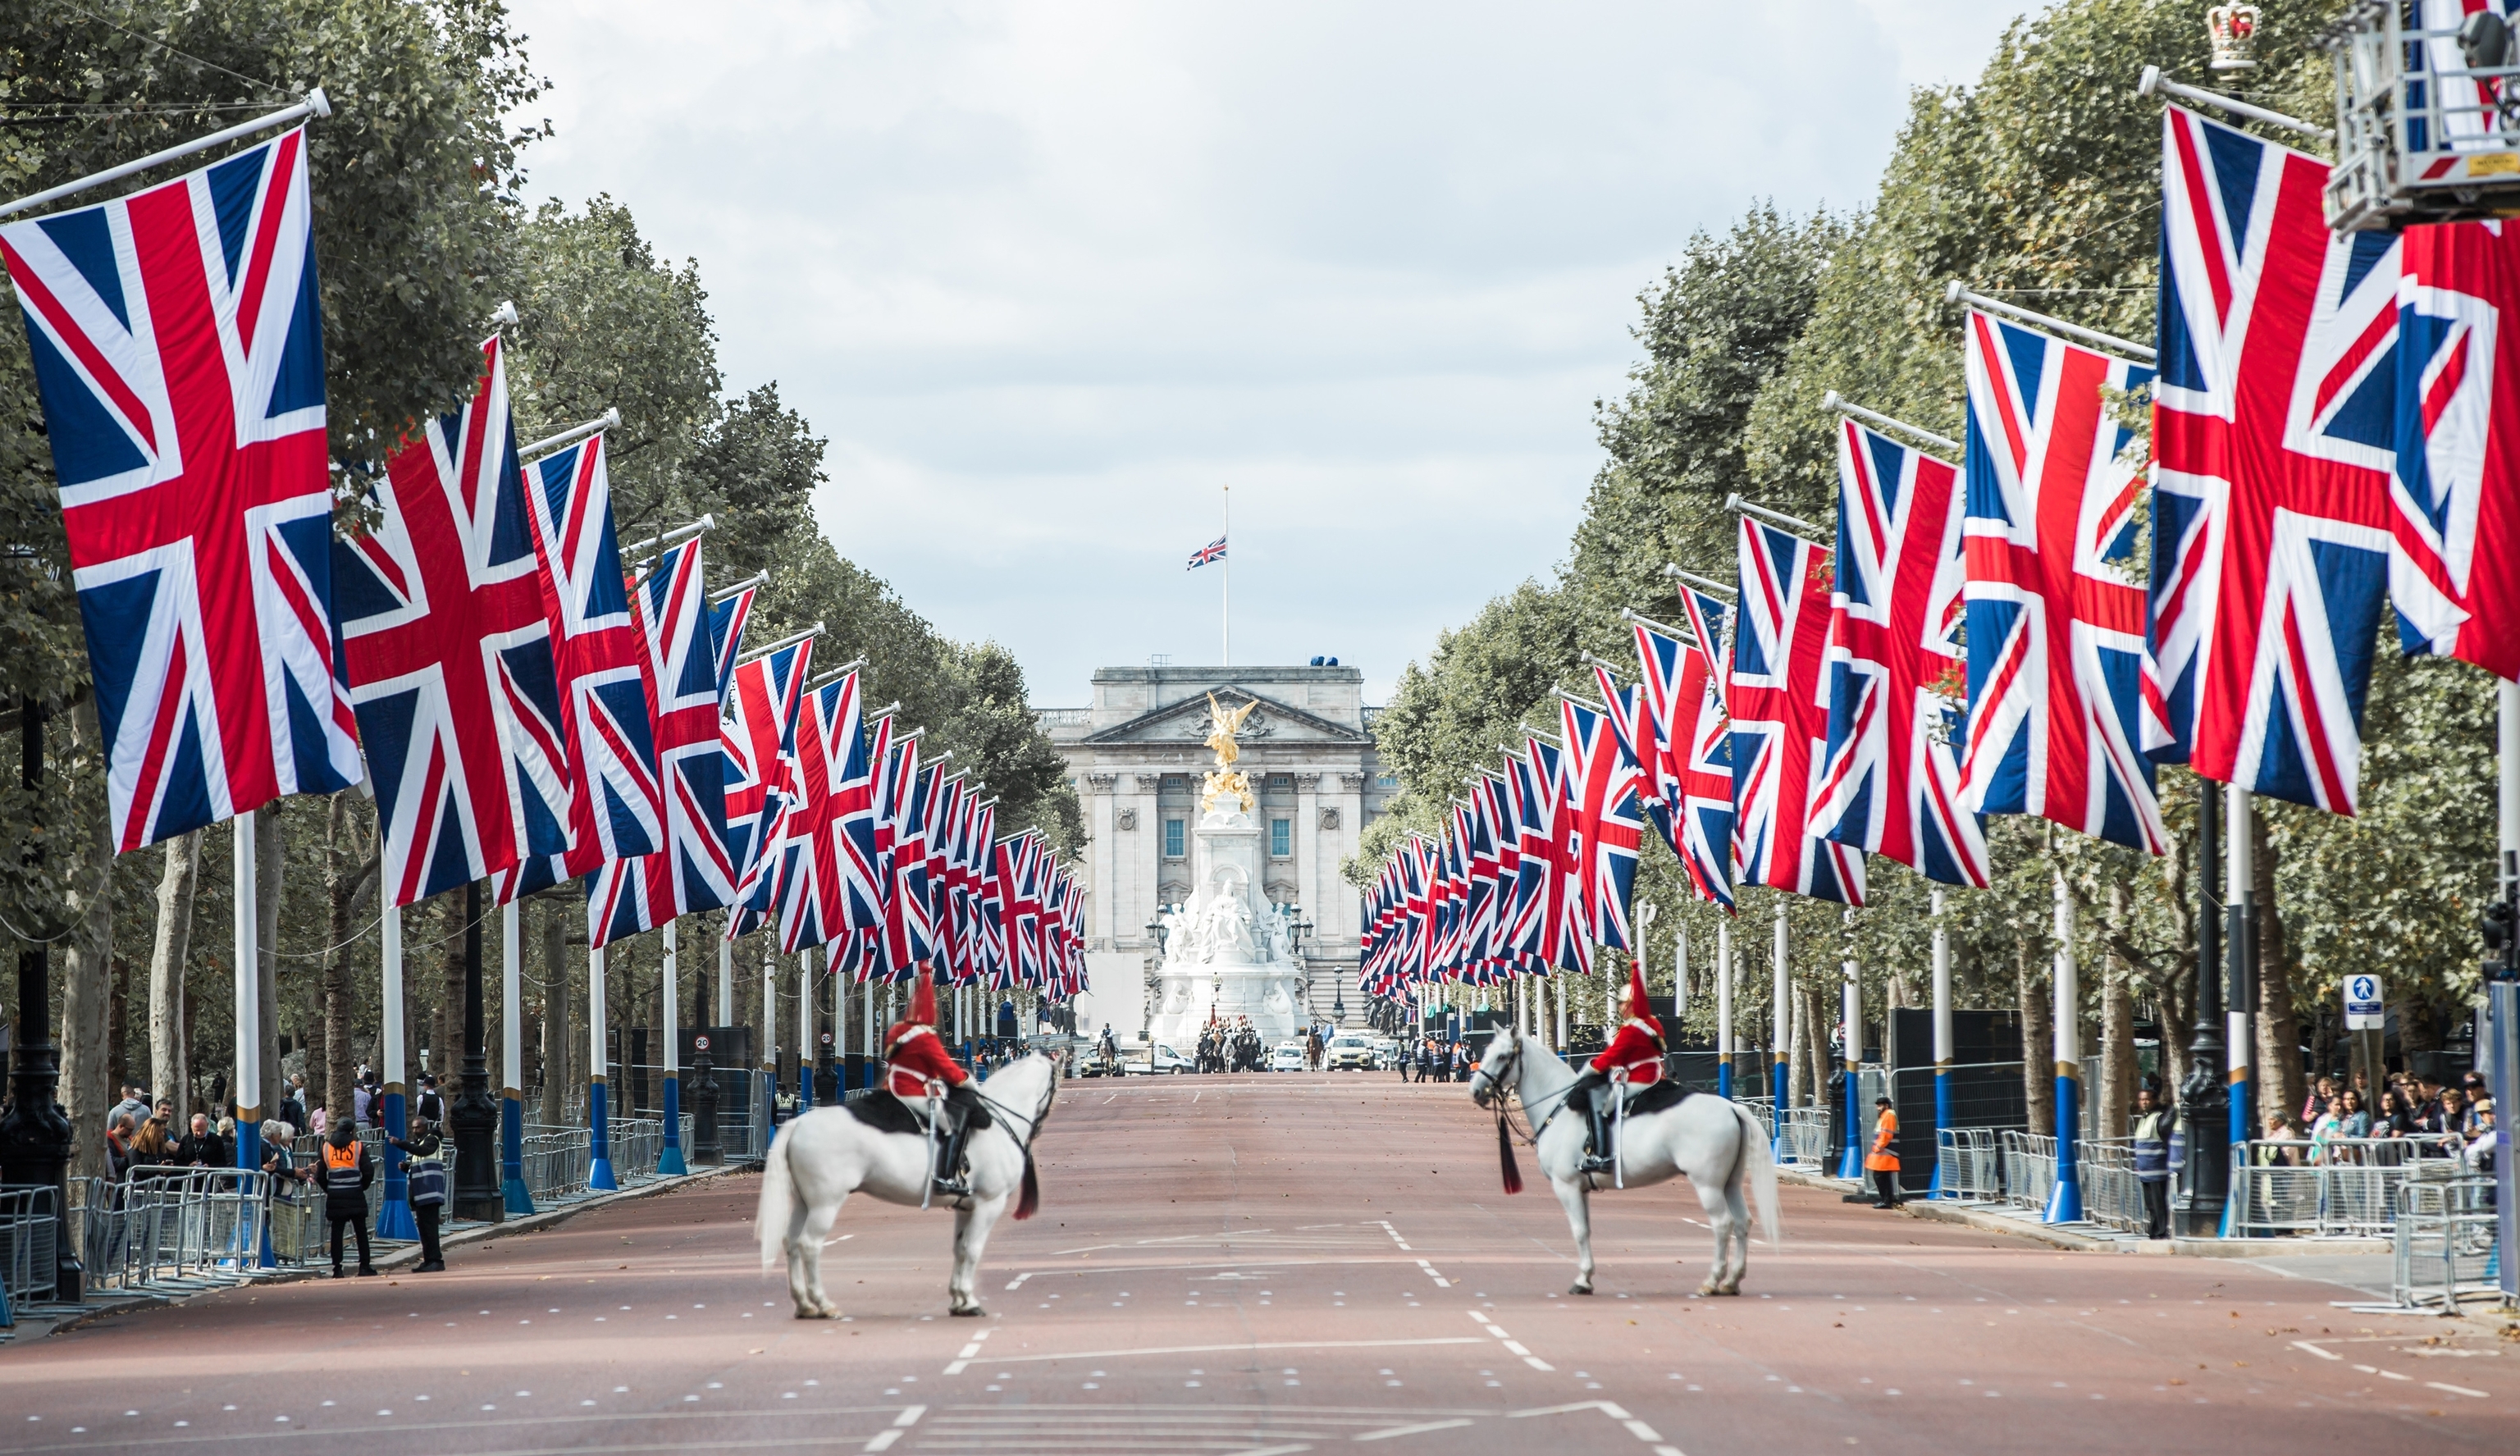 La calle de Pall Mall, decorada con banderas británicas.